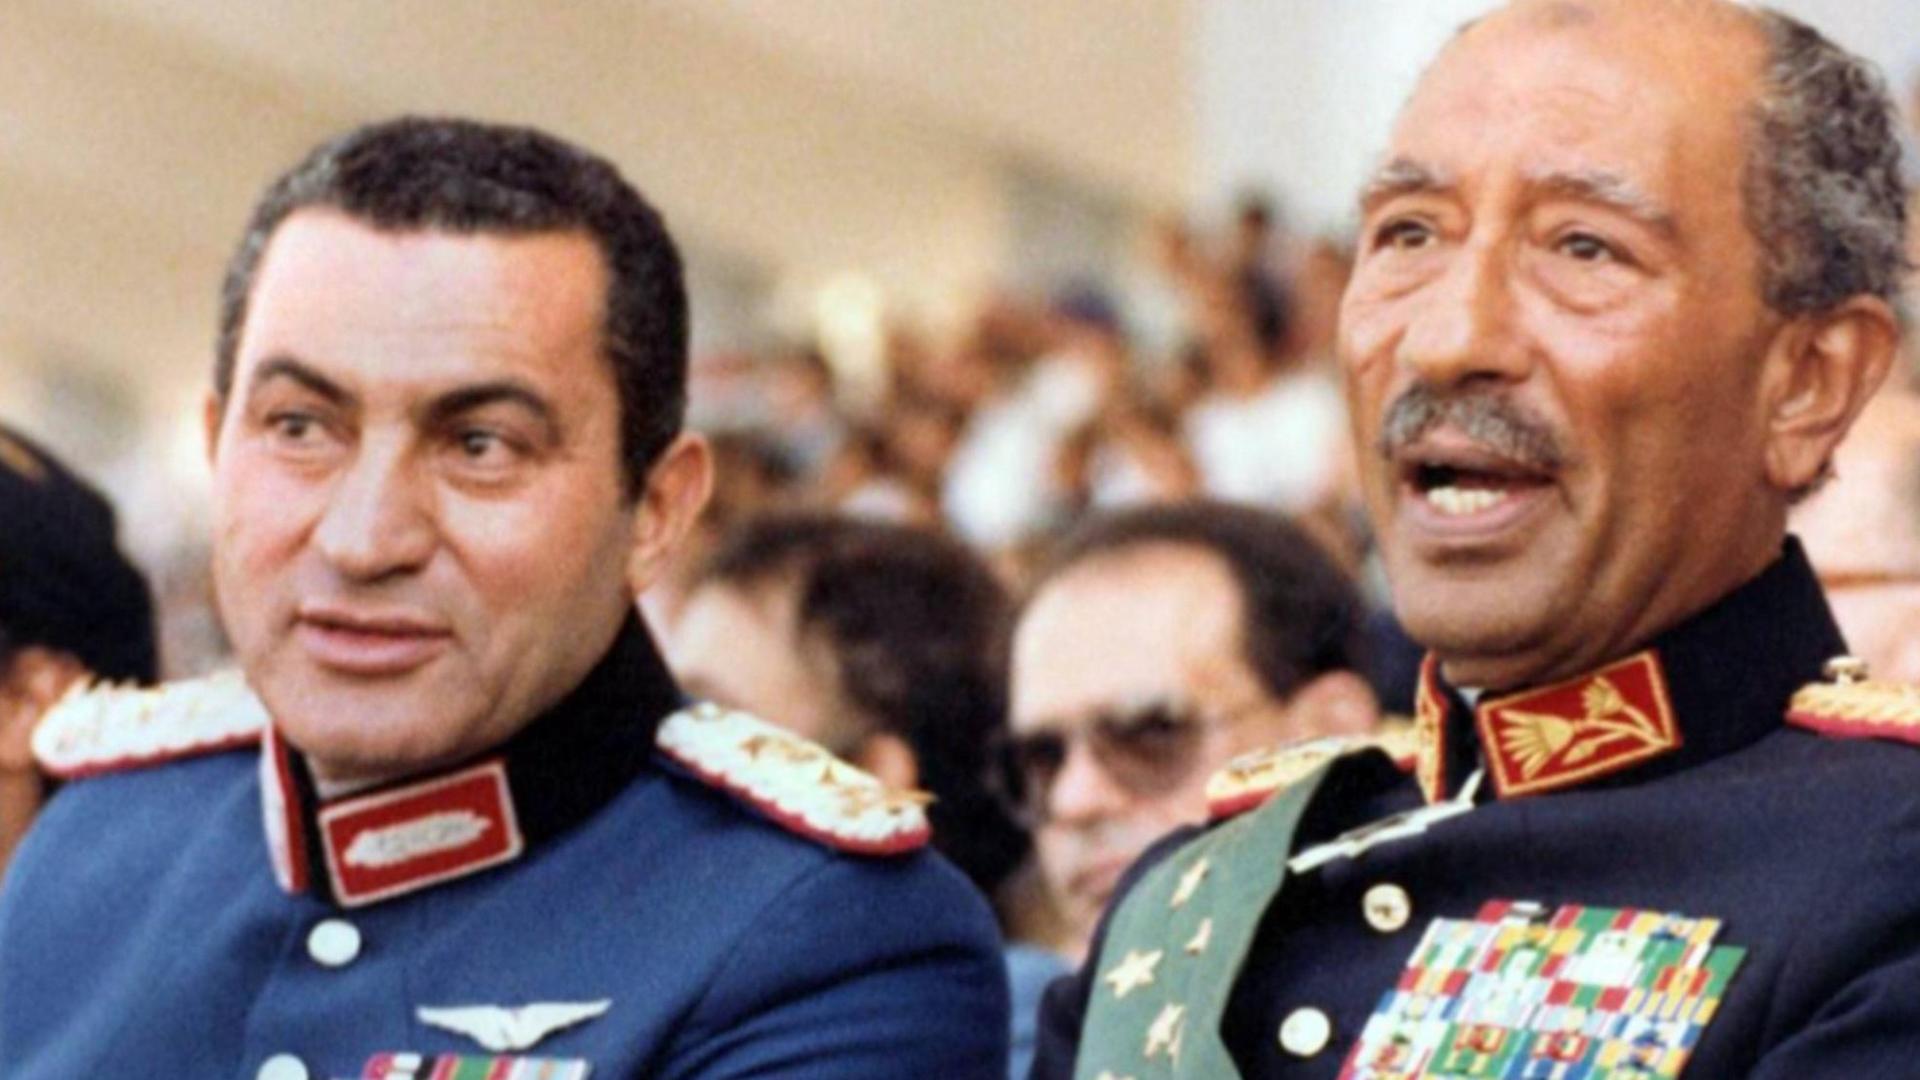 Der damlige ägyptische Vize-Präsident Hosni Mubarak (links) am 9.Oktober 1981 neben Präsident Anwar Sadat, Augenblicke bevor dessen Ermordung durch Schüsse eines Muslimbruders bei einer Militärparade in Kairo.